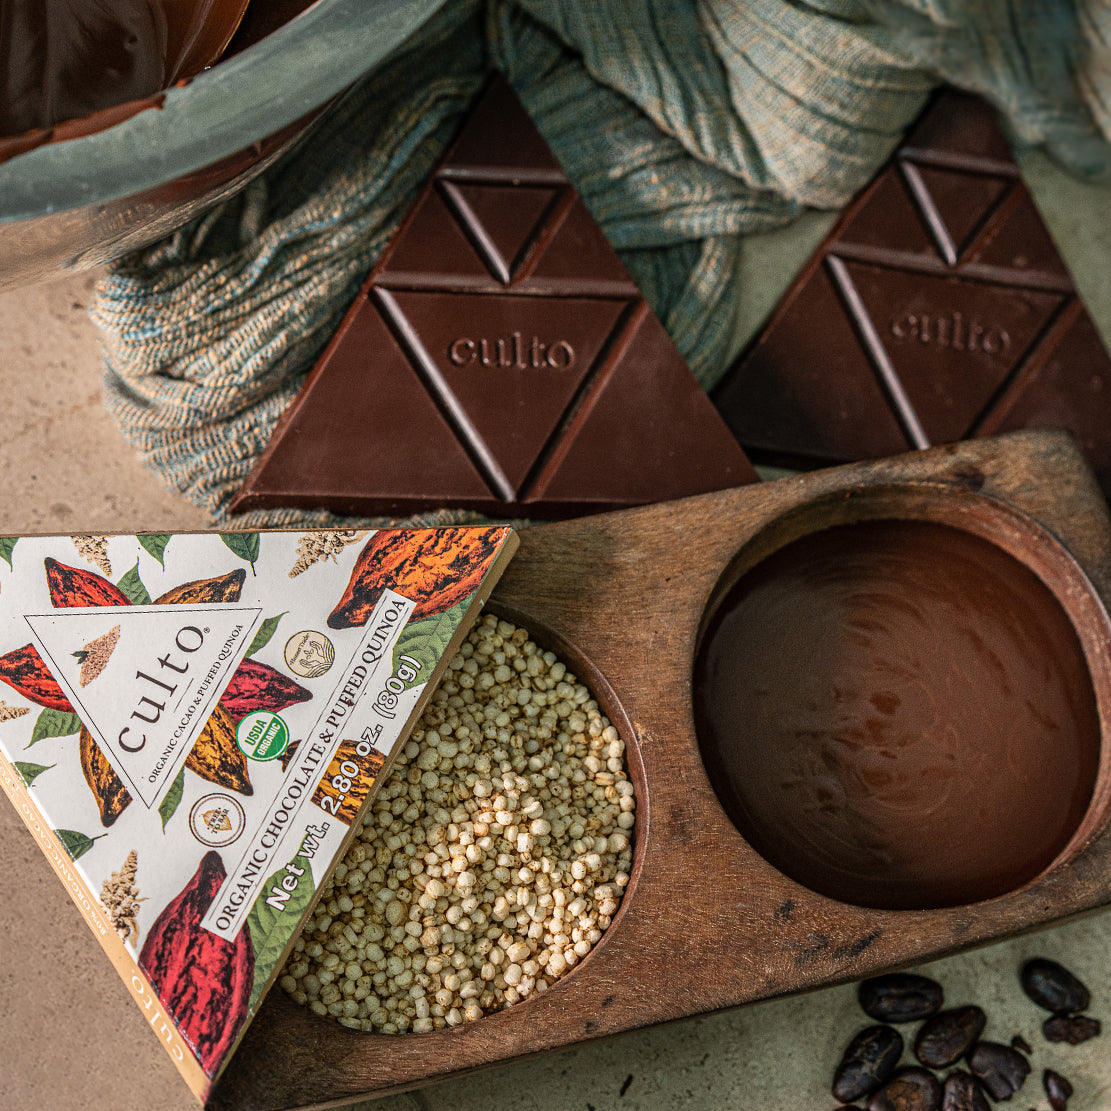 
                  
                    80% Cacao with Puffed Quinoa | Premium Dark Chocolate
                  
                